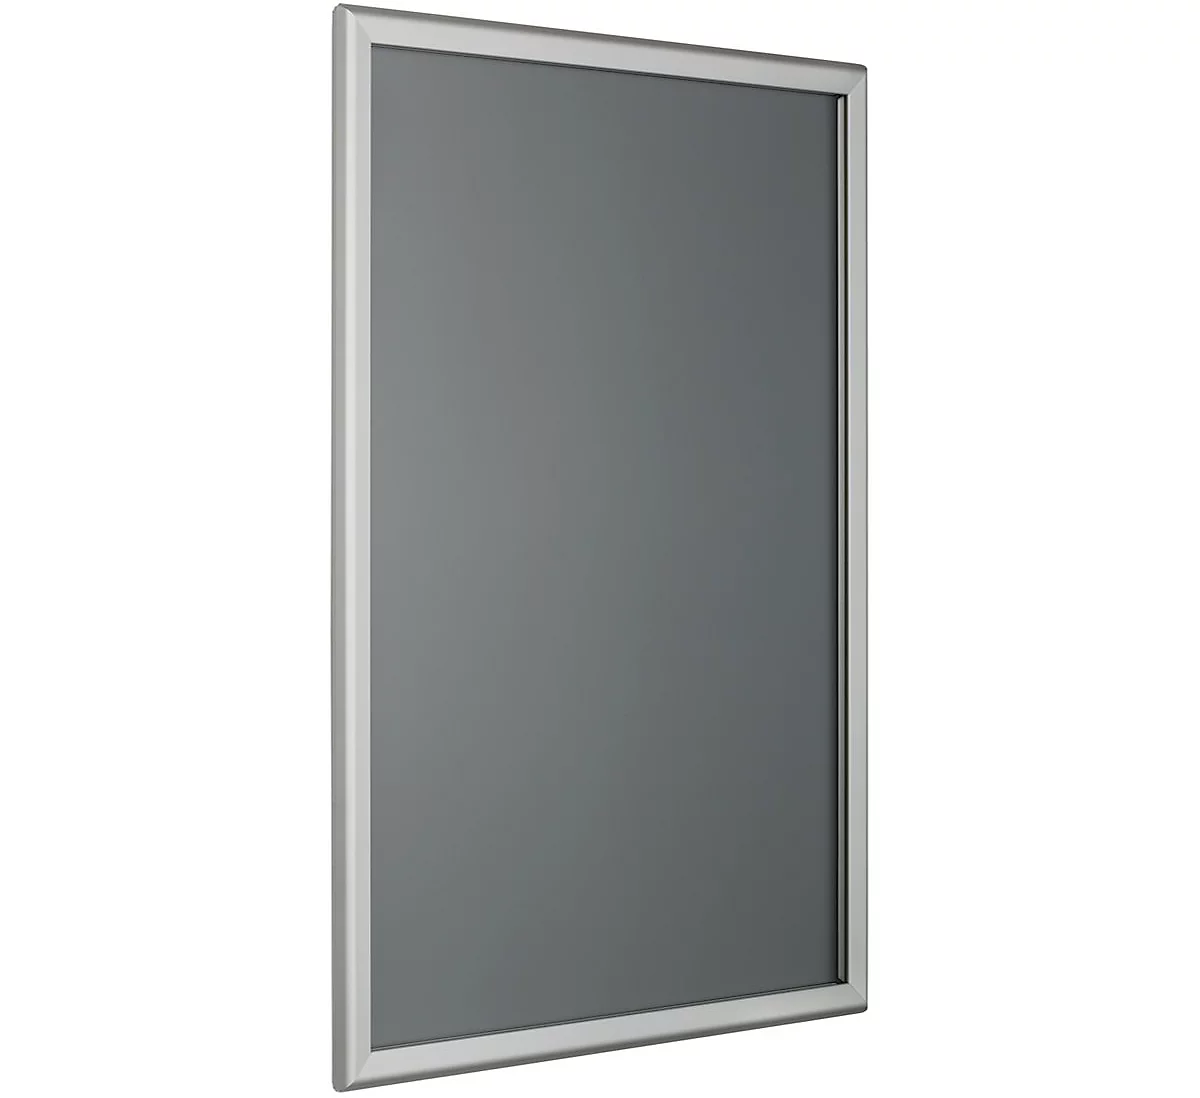 Marco intercambiable, esquinas angulares, perfil de aluminio anodizado plata, DIN A3, 297 x 420 mm